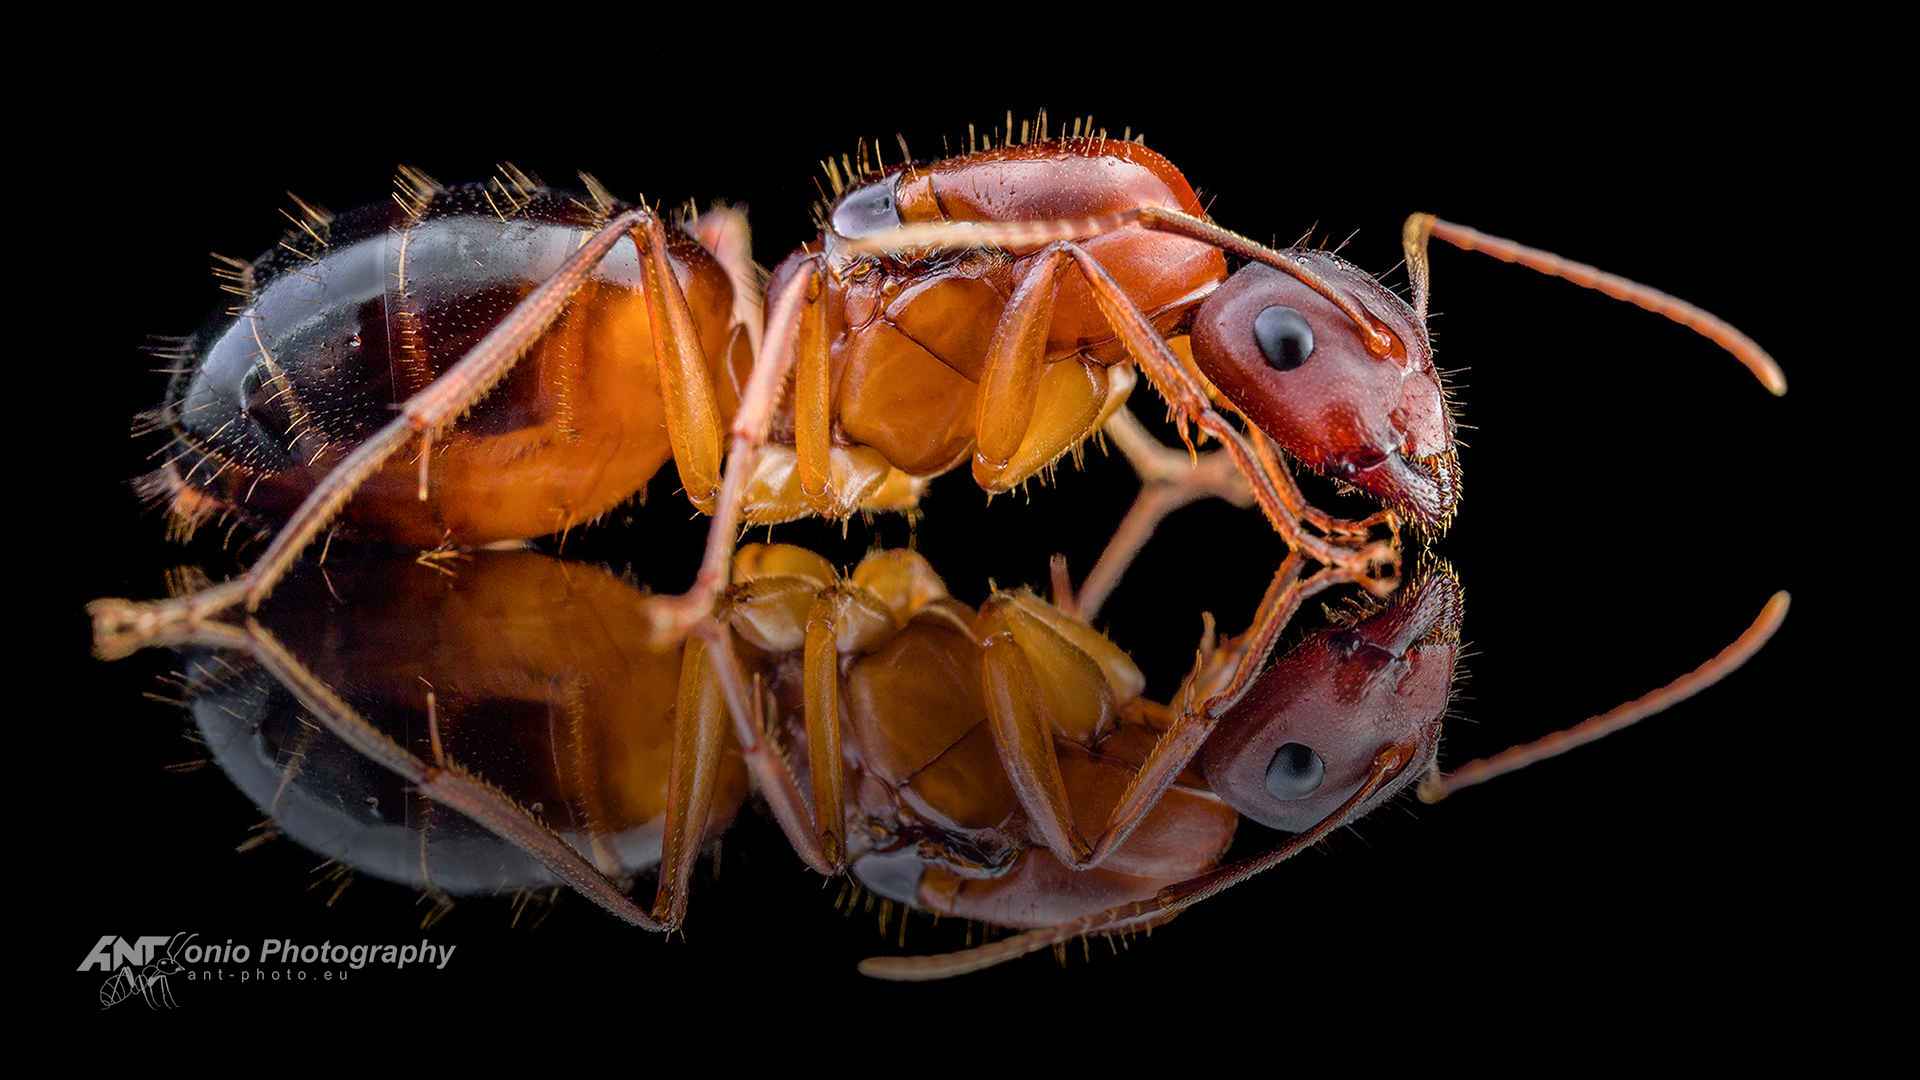 Camponotus pilicornis